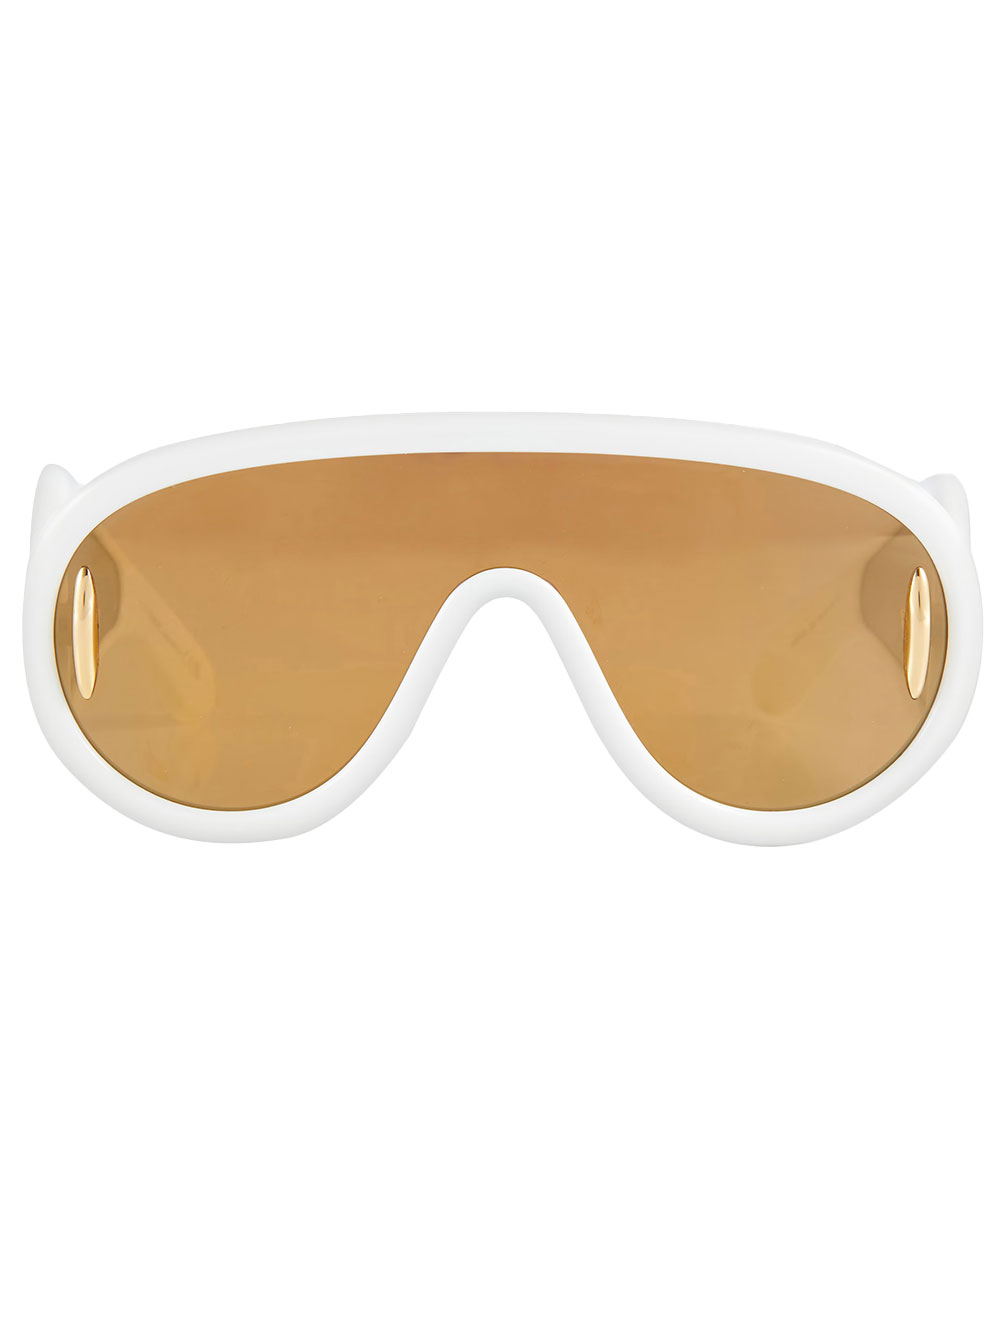 Loewe Paula's Ibiza LOEWE PAULA'S IBIZA- Wave Mask Sunglasses